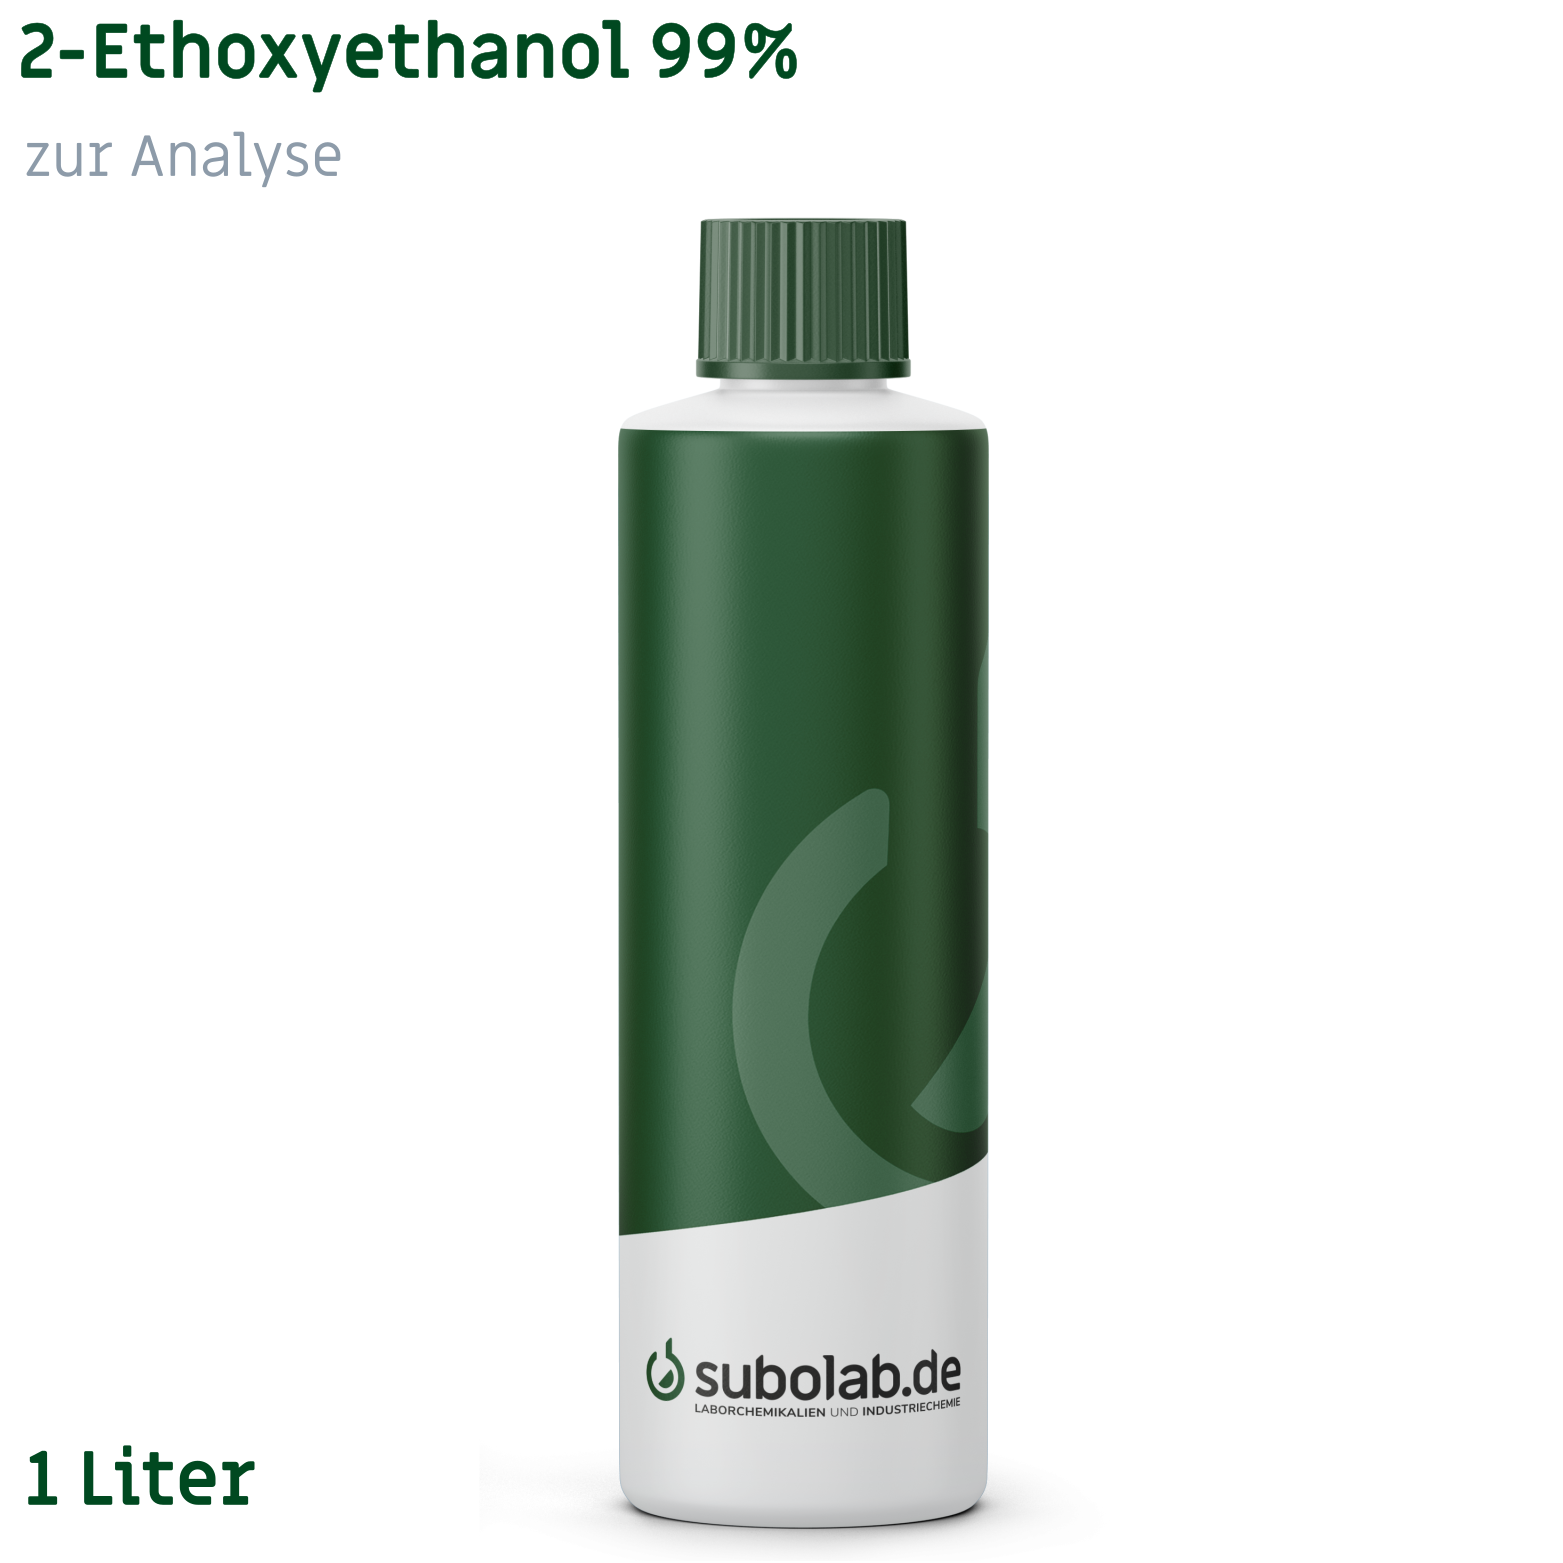 Bild von 2-Ethoxyethanol 99% zur Analyse (1 Liter)